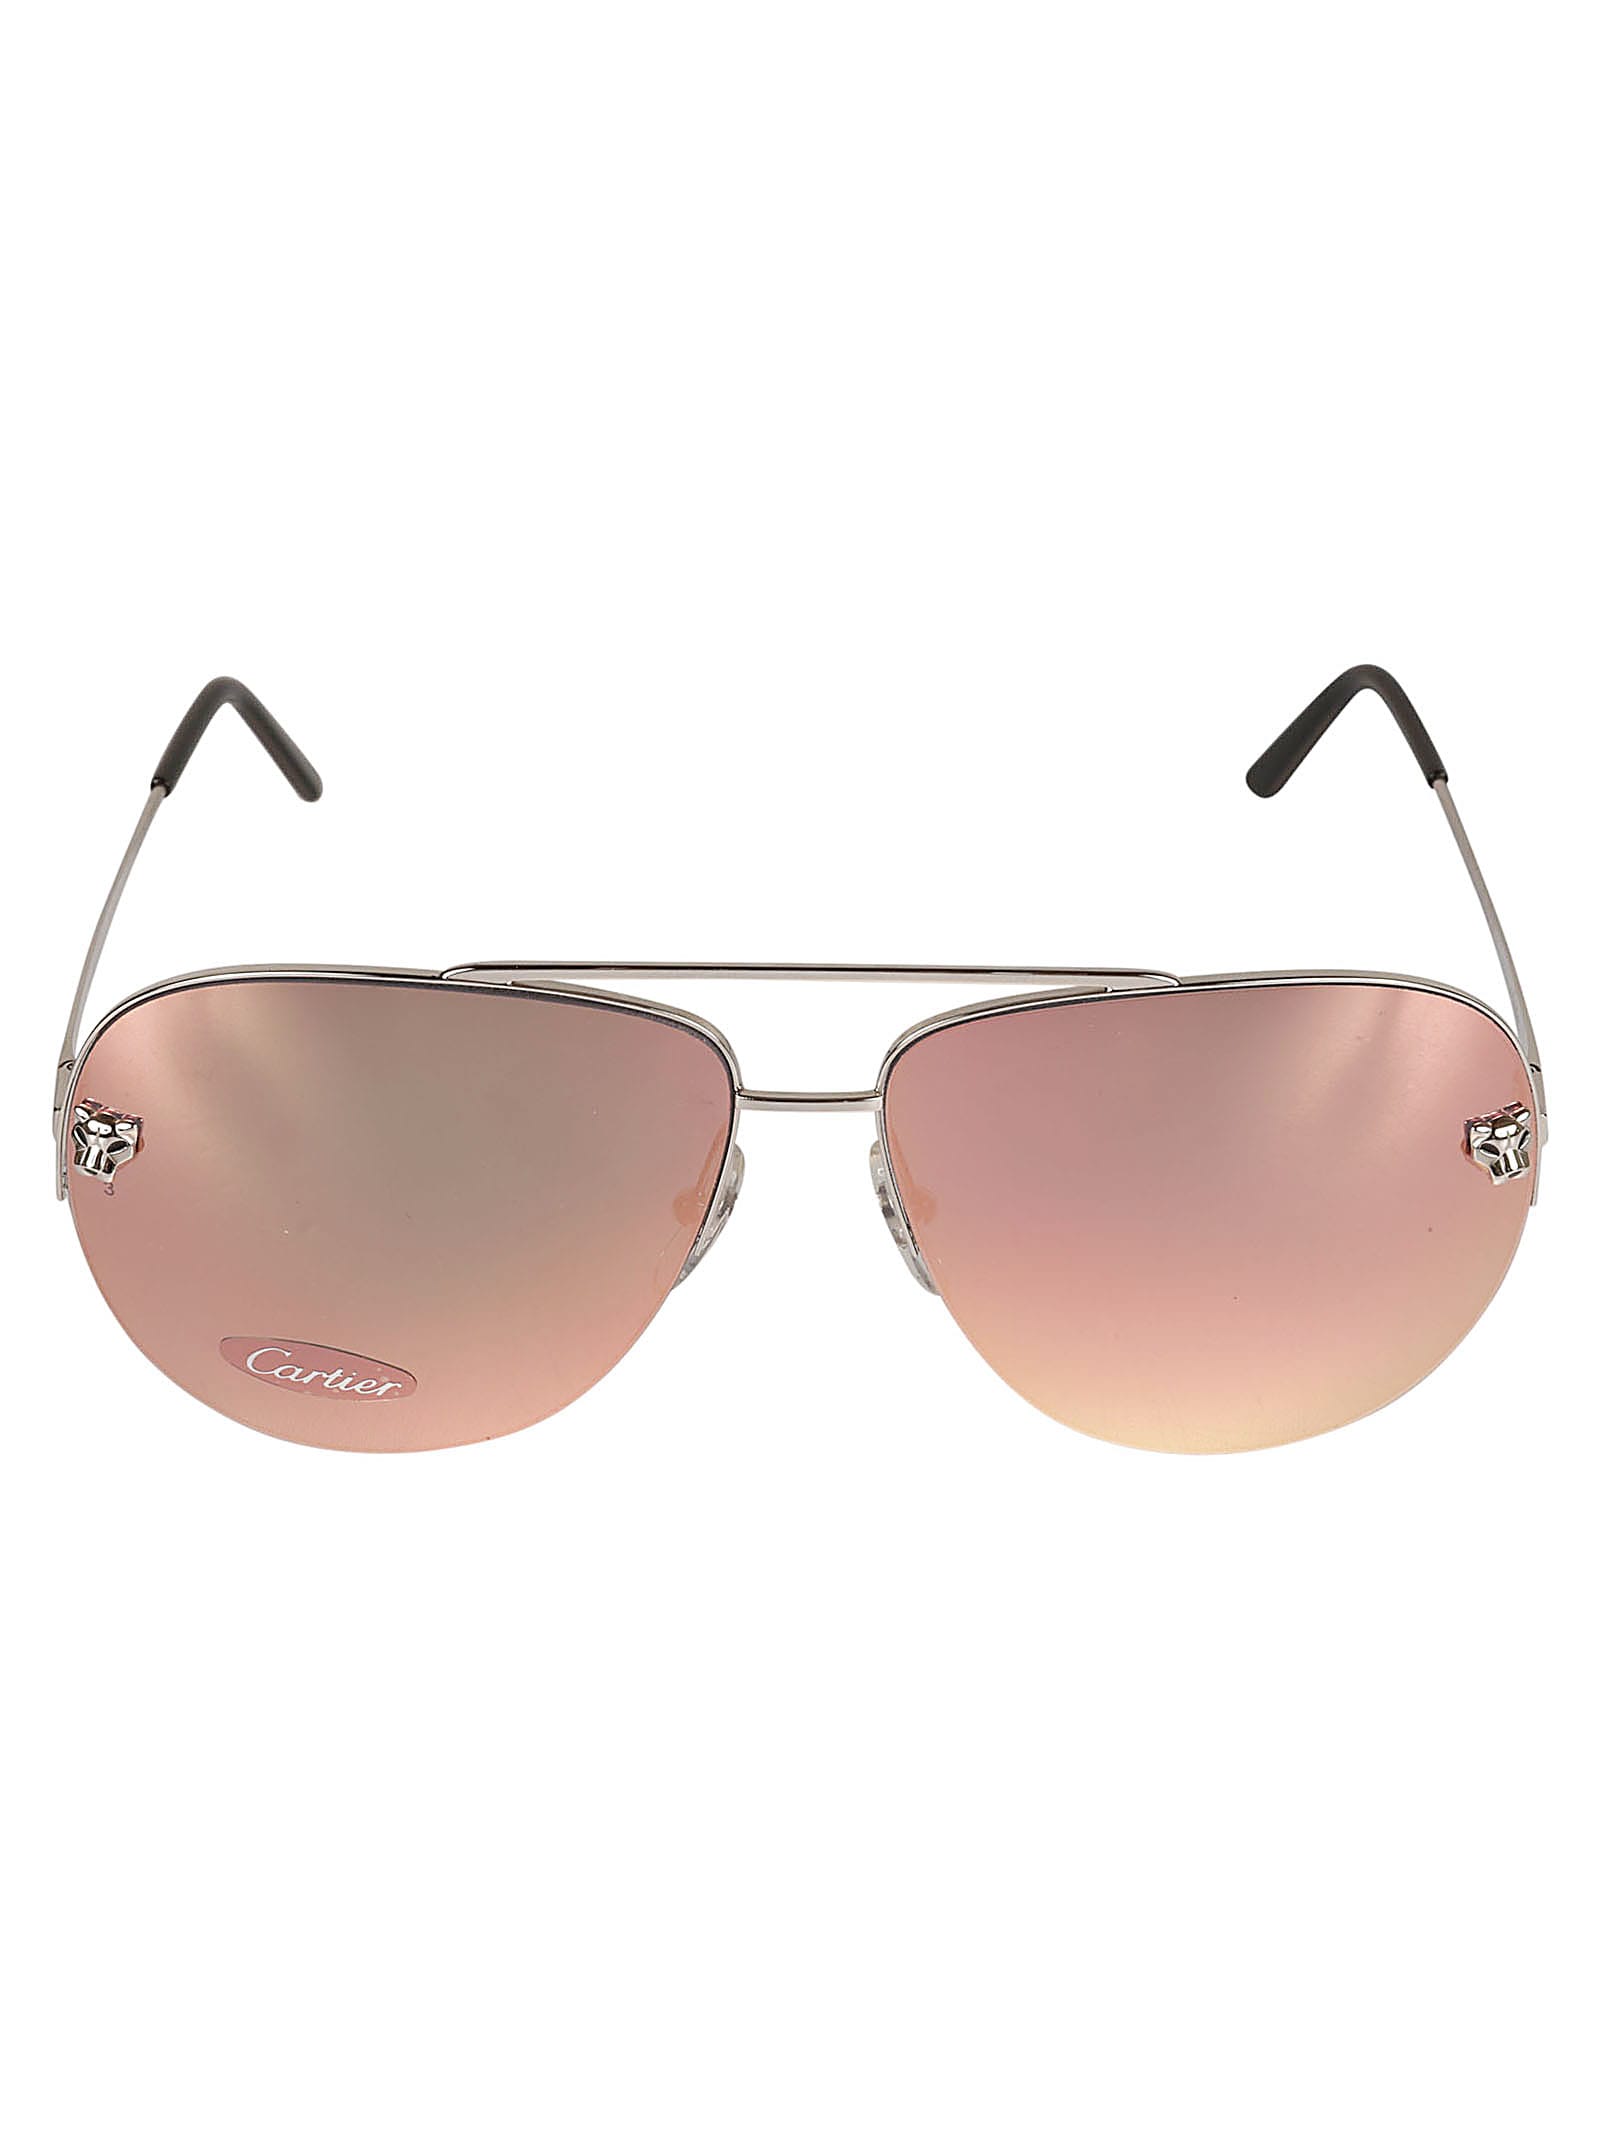 Cartier Aviator Classic Sunglasses In Platinum